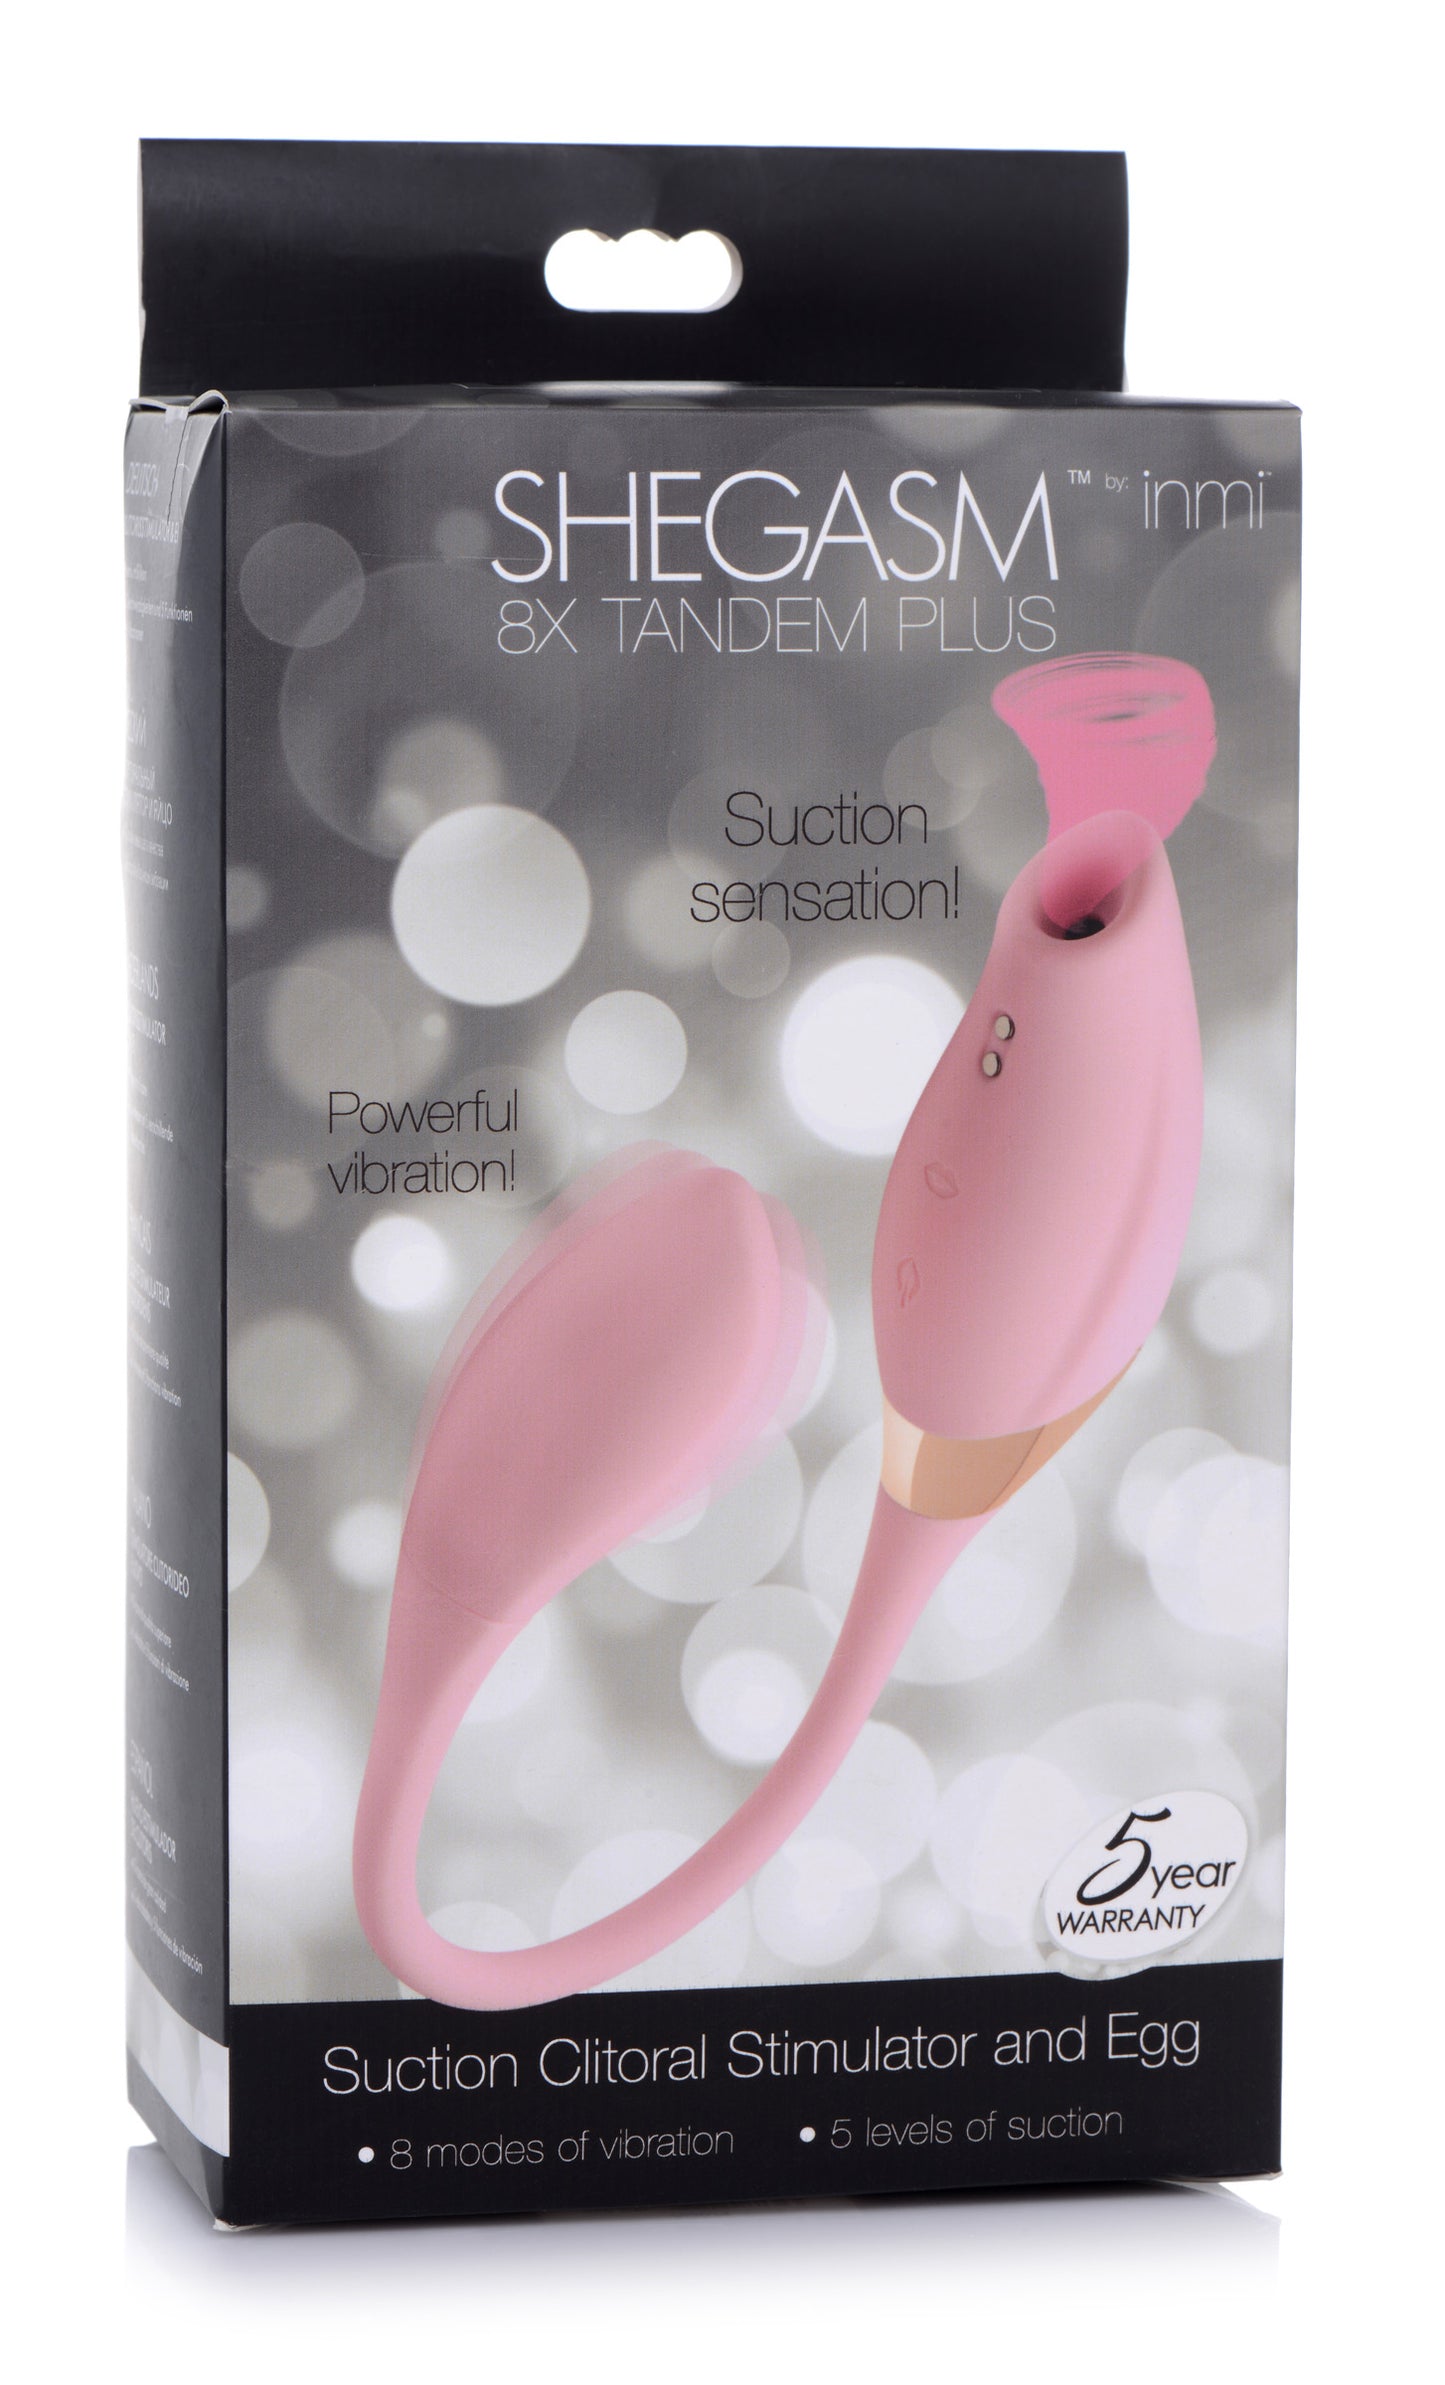 Shegasm 8X Tandem Plus Silicone Suction Clitoral Stimulator and Egg - UABDSM